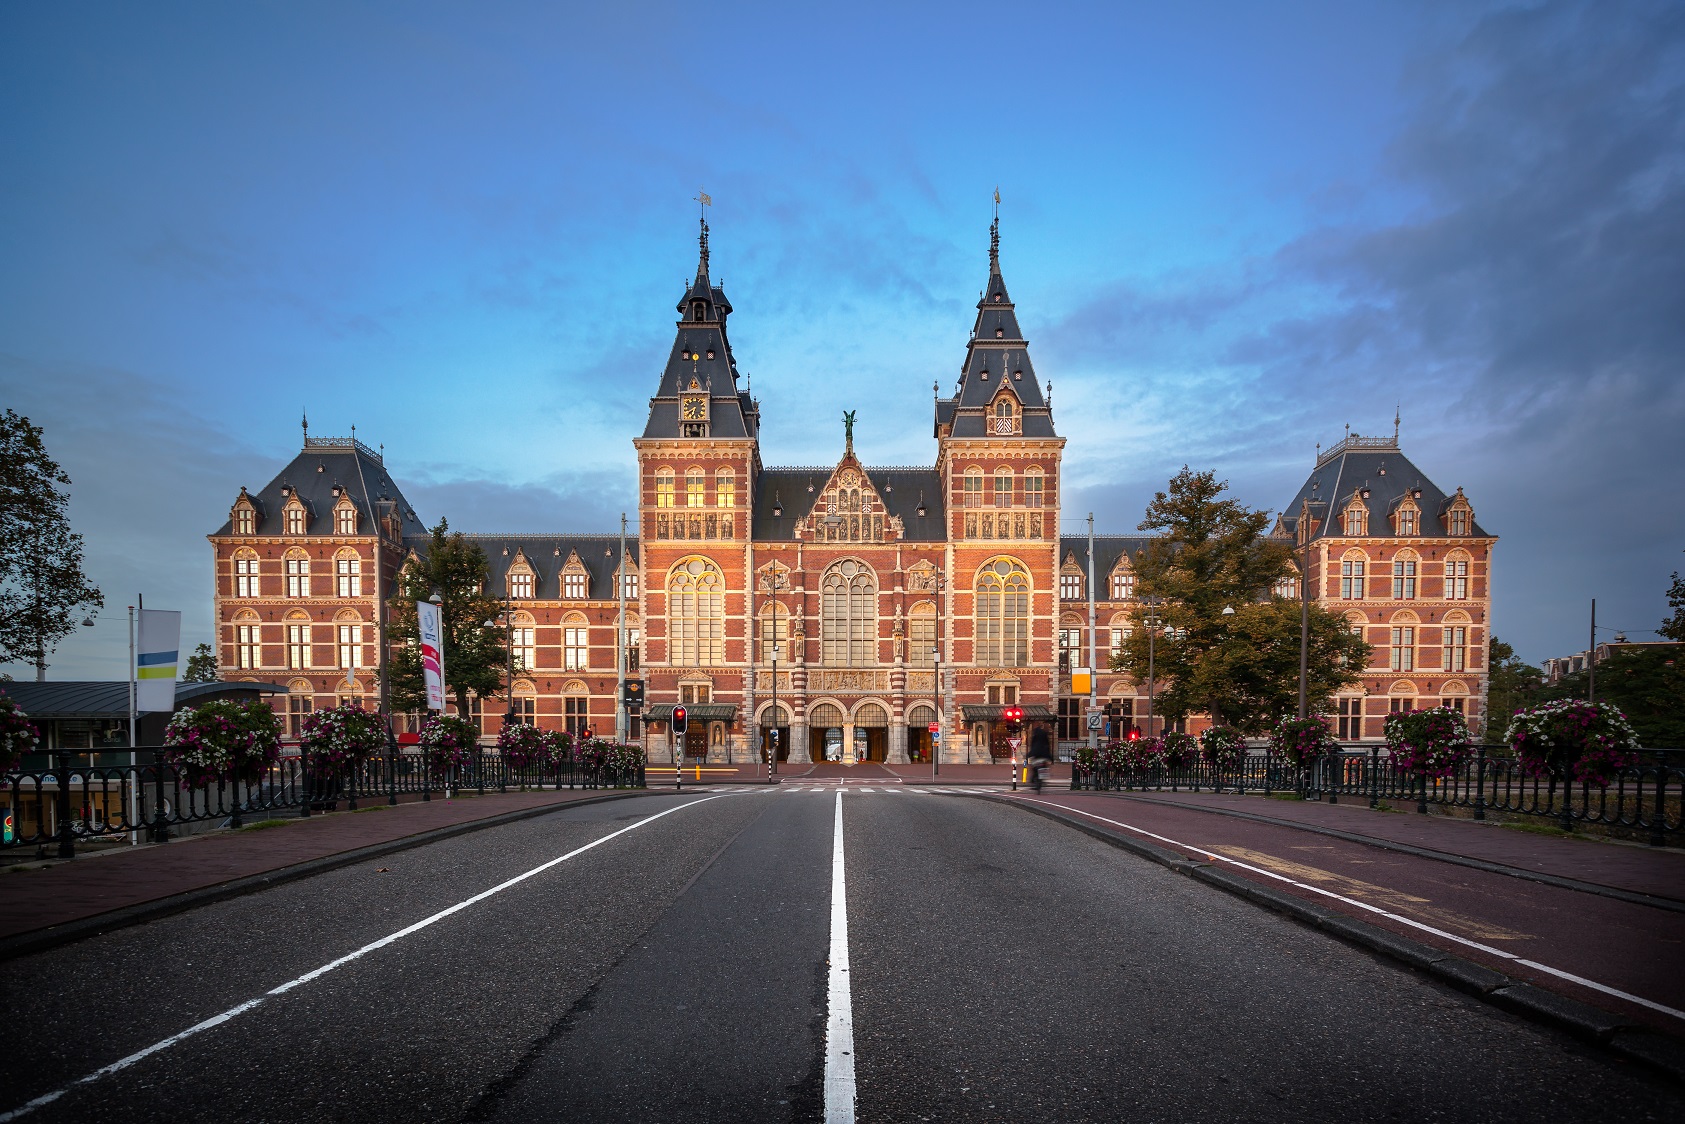 The Rijksmuseum, Netherlands